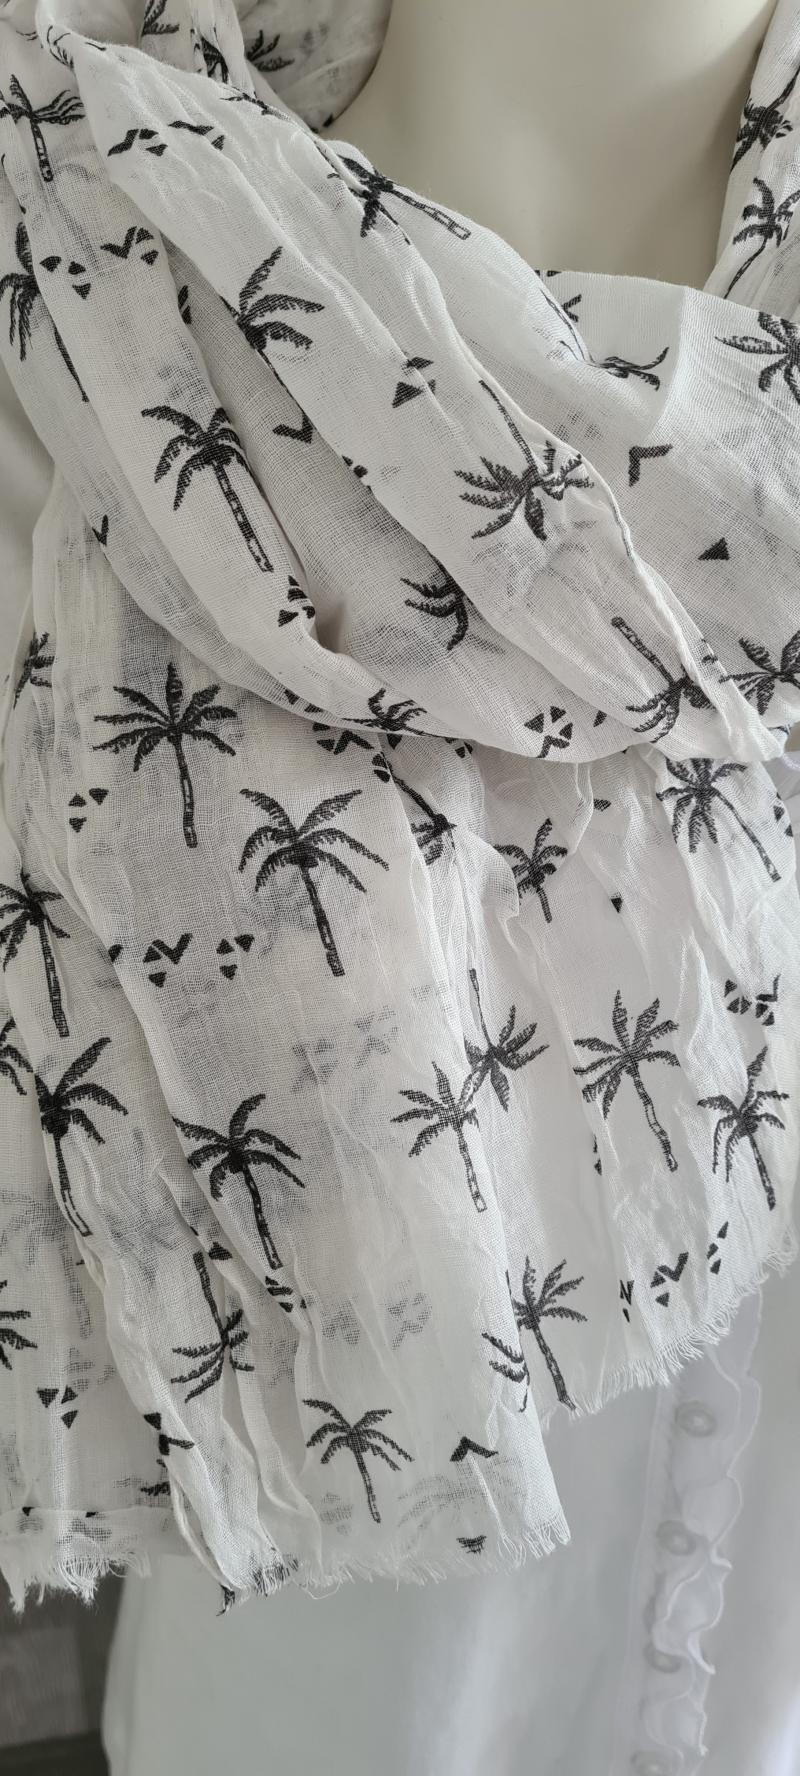 A-Zone Tuch Sommerschal schwarz weiß Palmenmuster